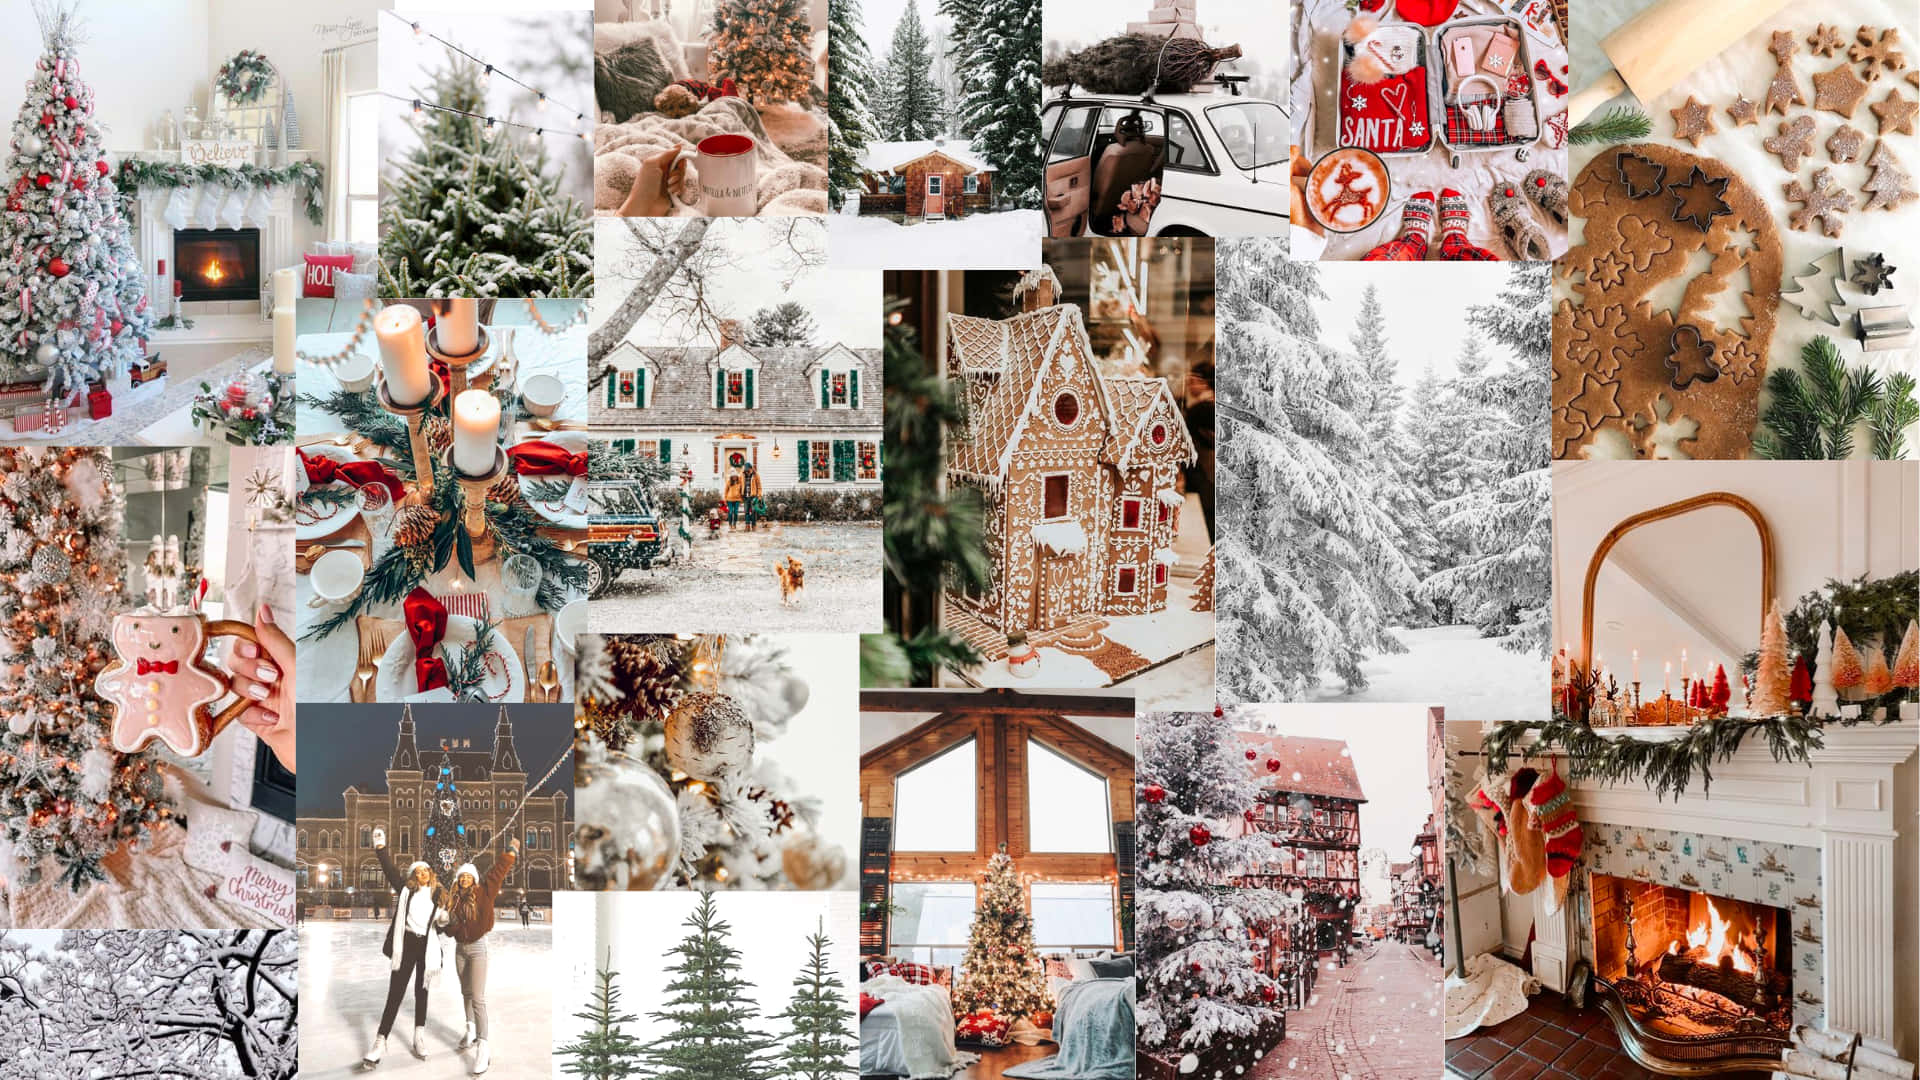 Julekollage med juletræer og dekorationer Wallpaper